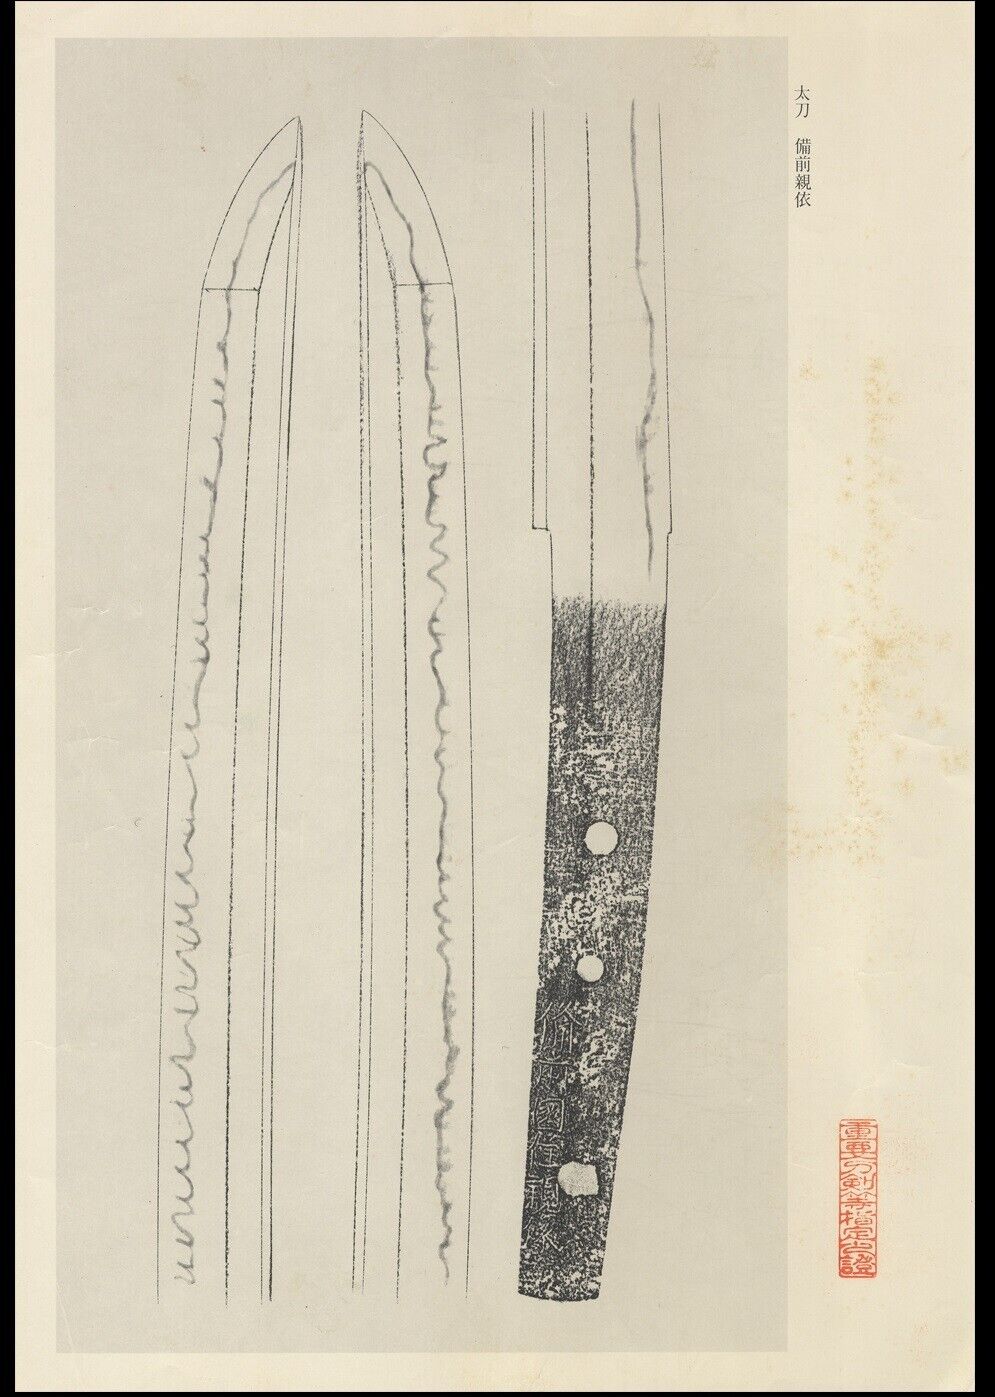 Japanese Sword Antique Tachi Shirasaya 親依 Chikayori 23.9 inch From Japan Katana